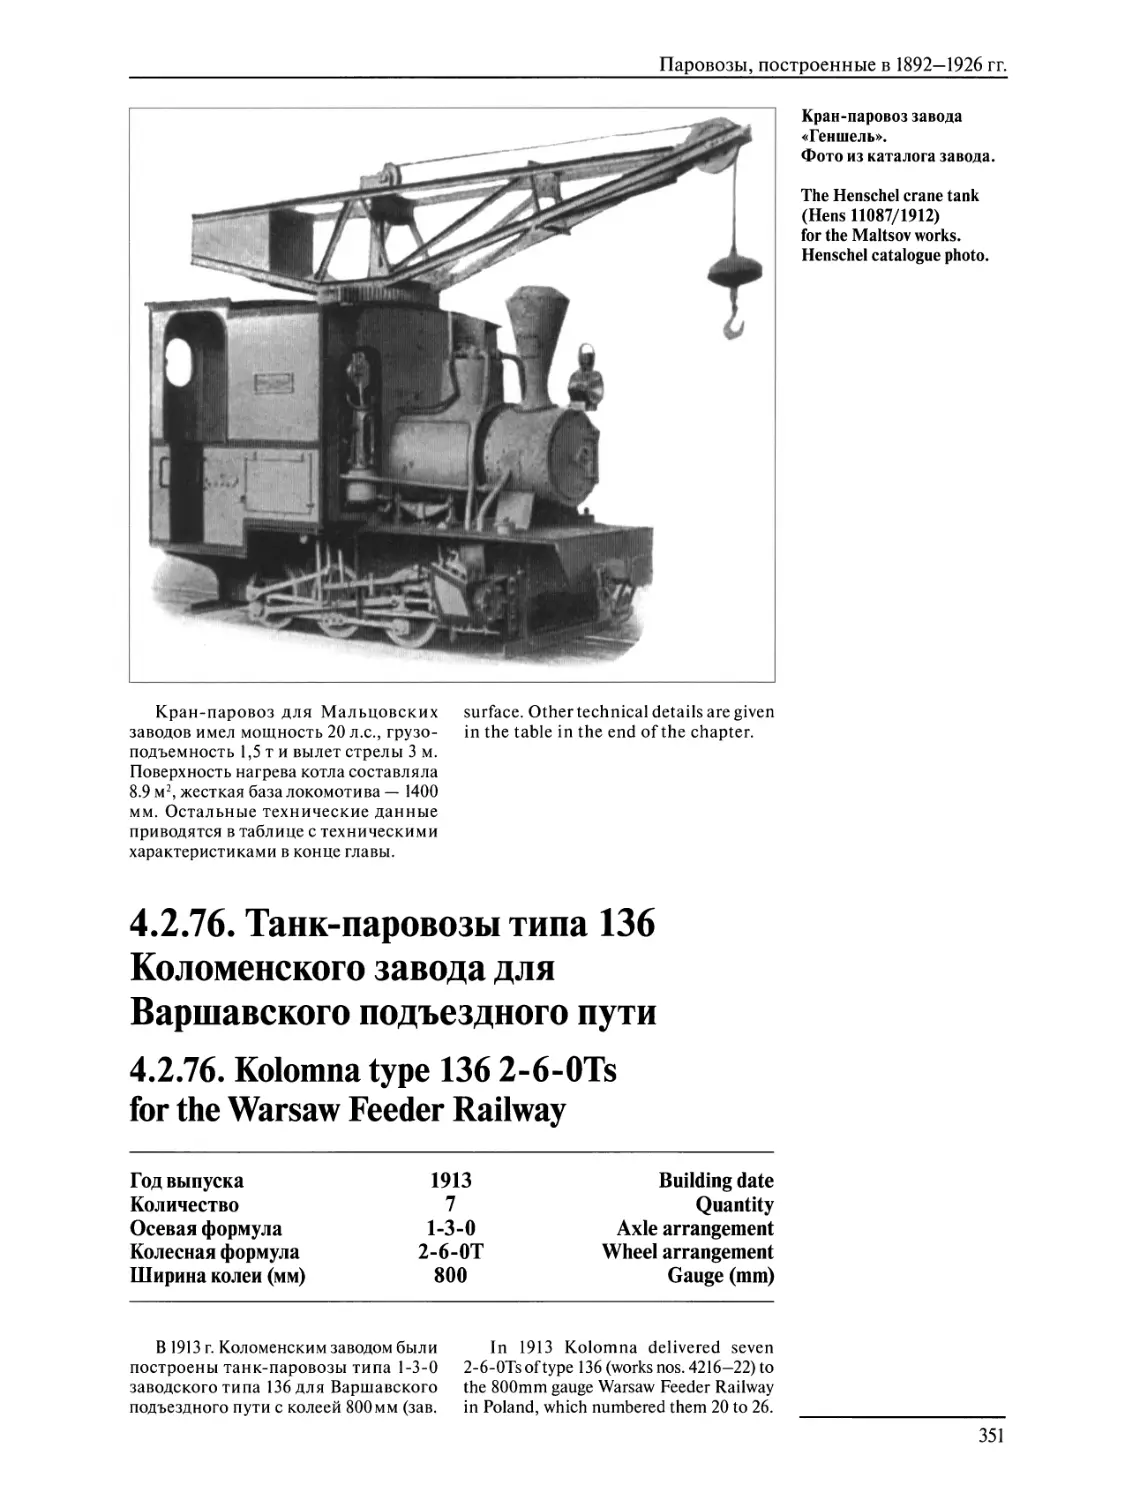 4.2.76. Танк-паровозы типа 136 Коломенского завода для Варшавского подъездного пути